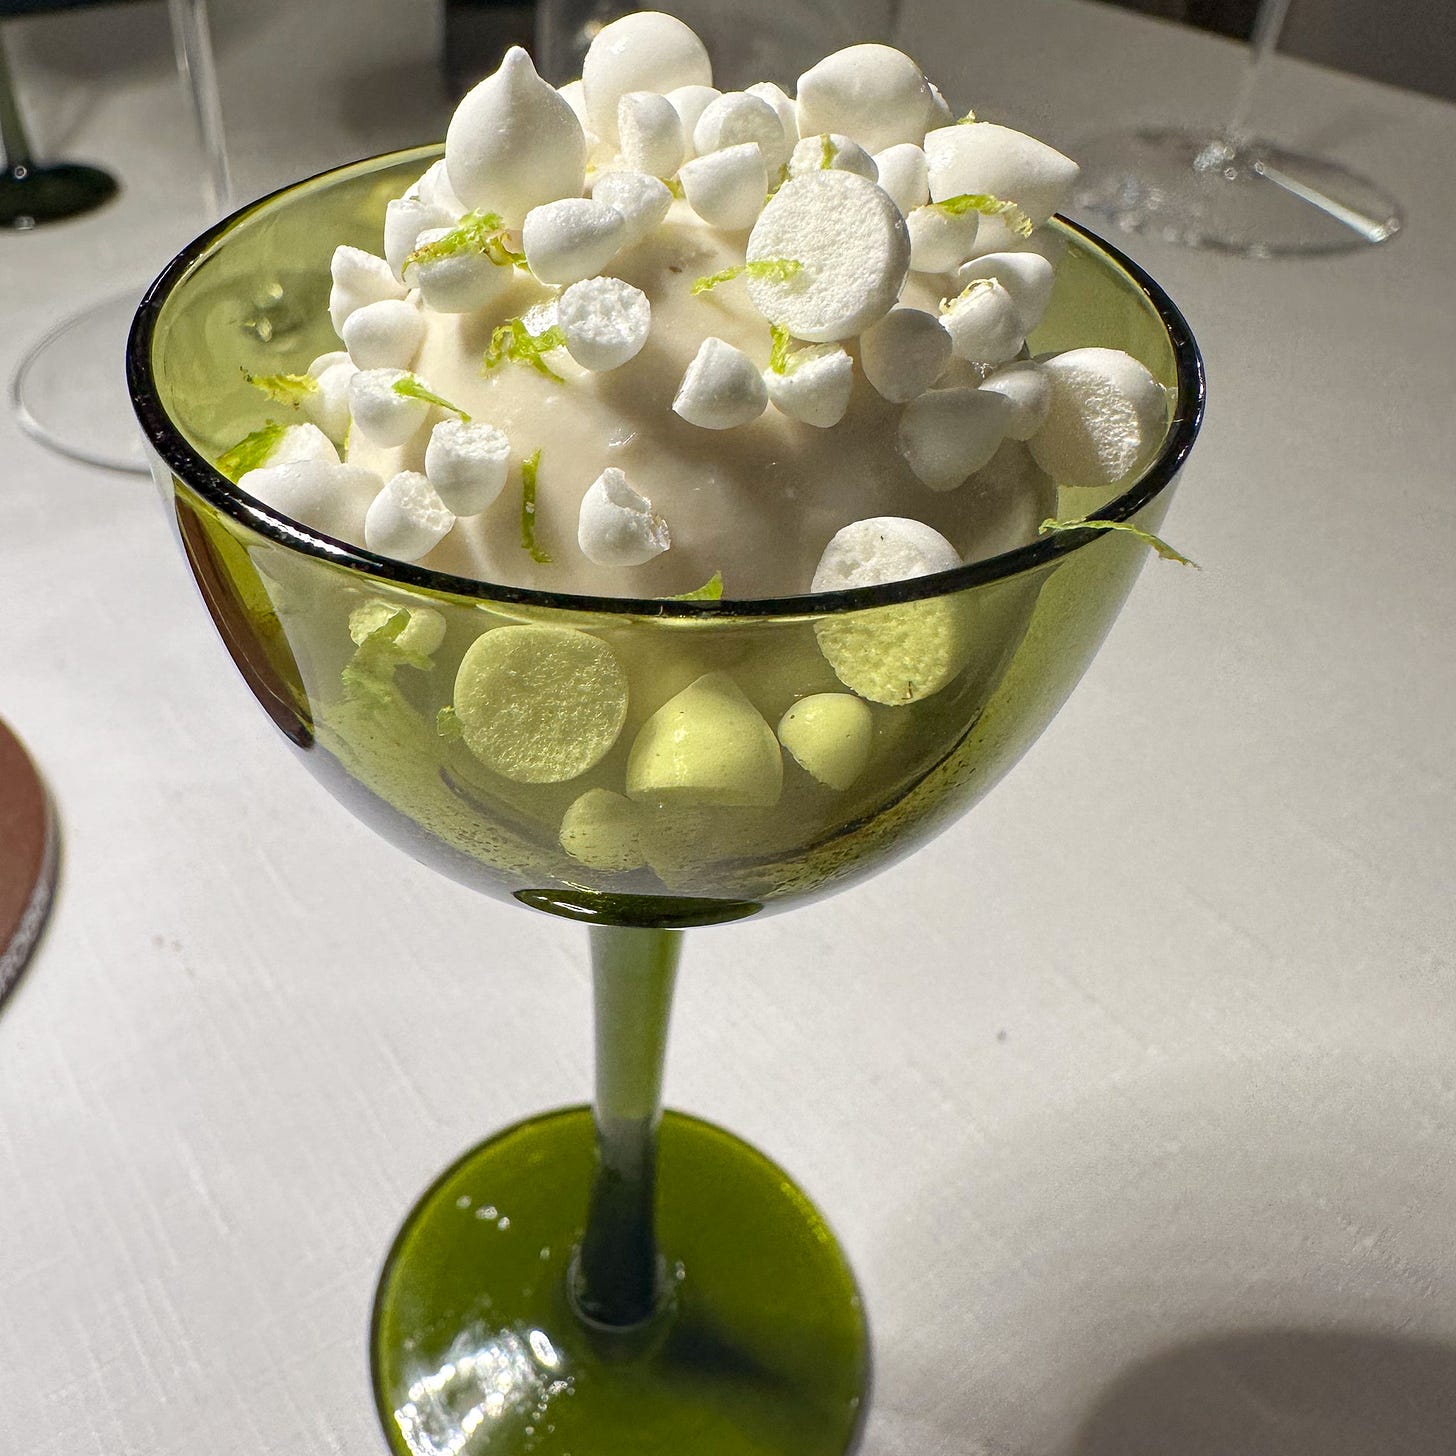 sorbet with meringue at Amalia restaurant in Paris